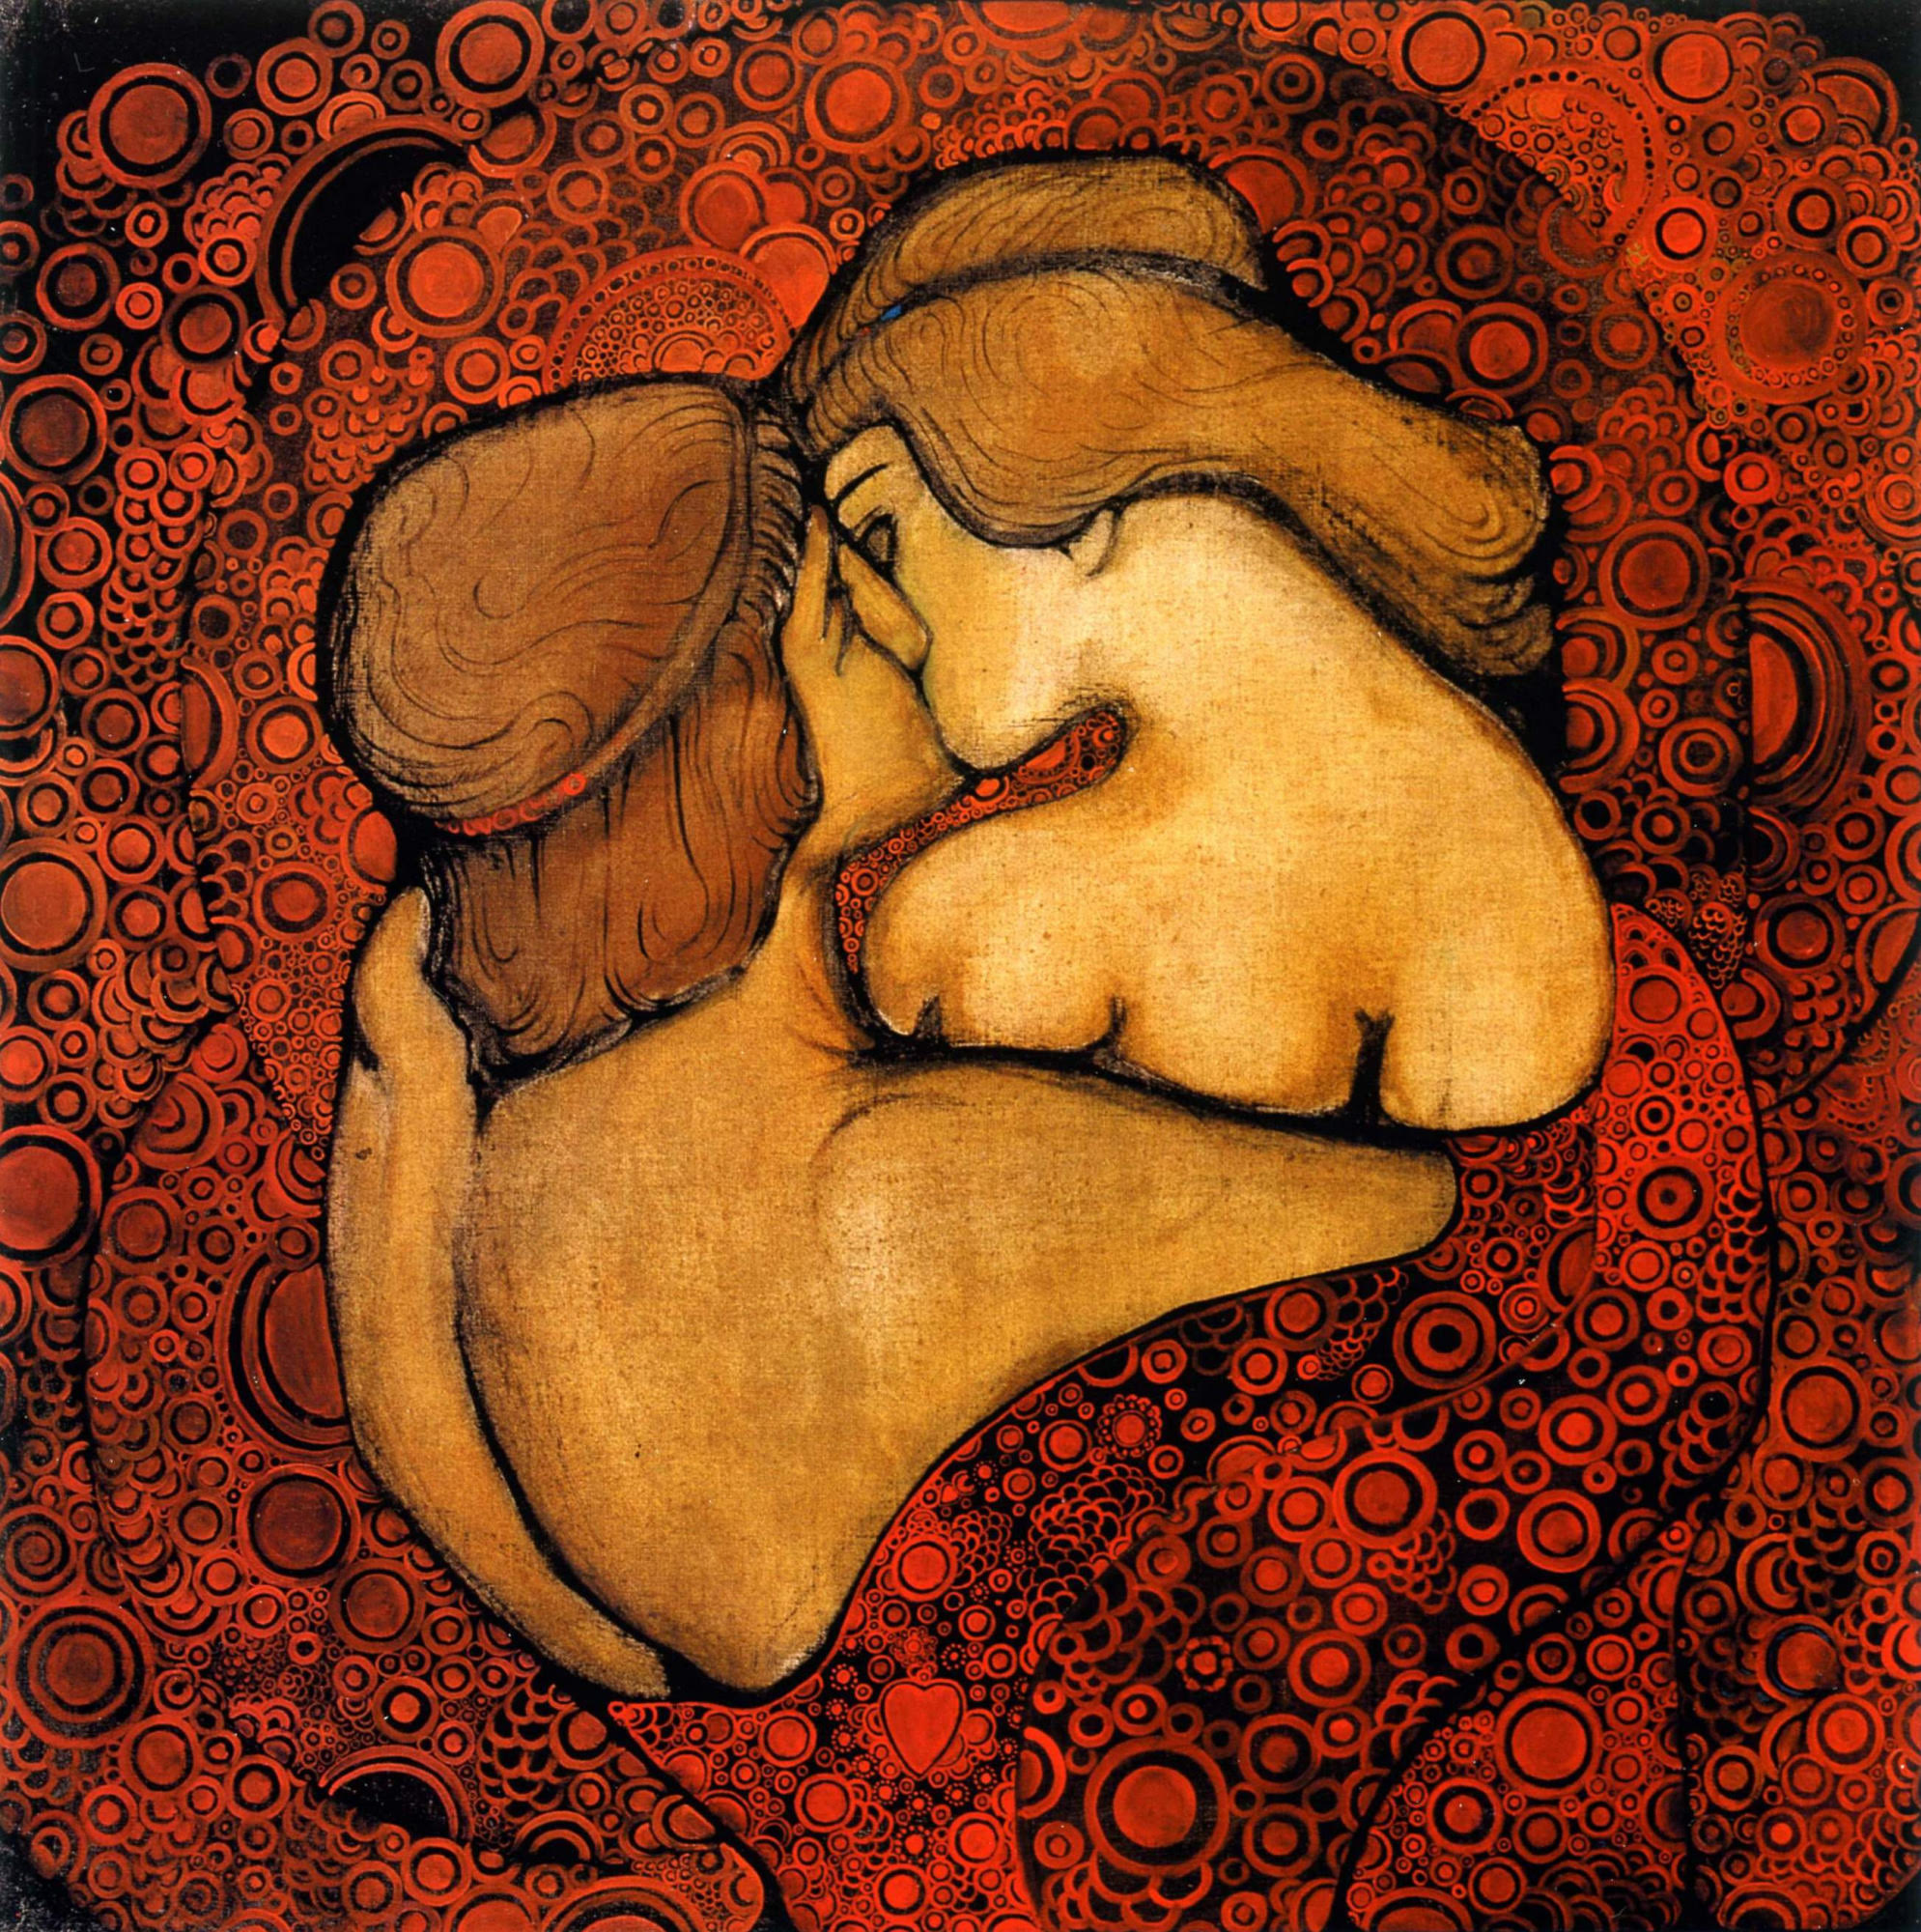 Поцелуй (The Kiss) by Vsevolod Maksymovych - 1913 - 100 x 100 см 